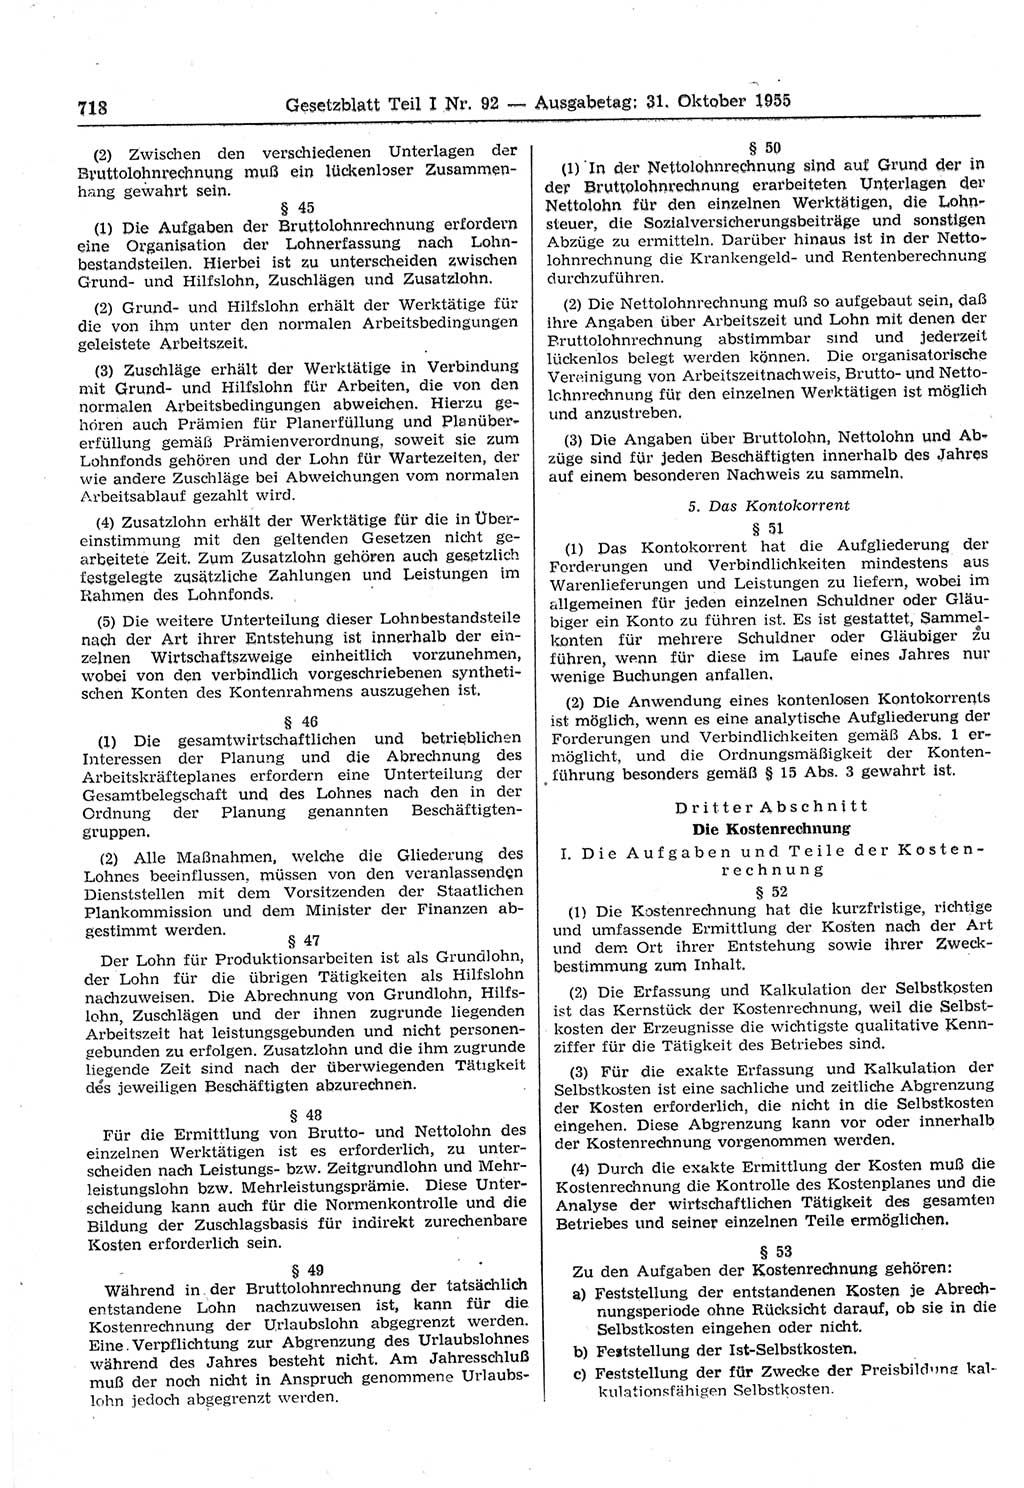 Gesetzblatt (GBl.) der Deutschen Demokratischen Republik (DDR) Teil Ⅰ 1955, Seite 718 (GBl. DDR Ⅰ 1955, S. 718)